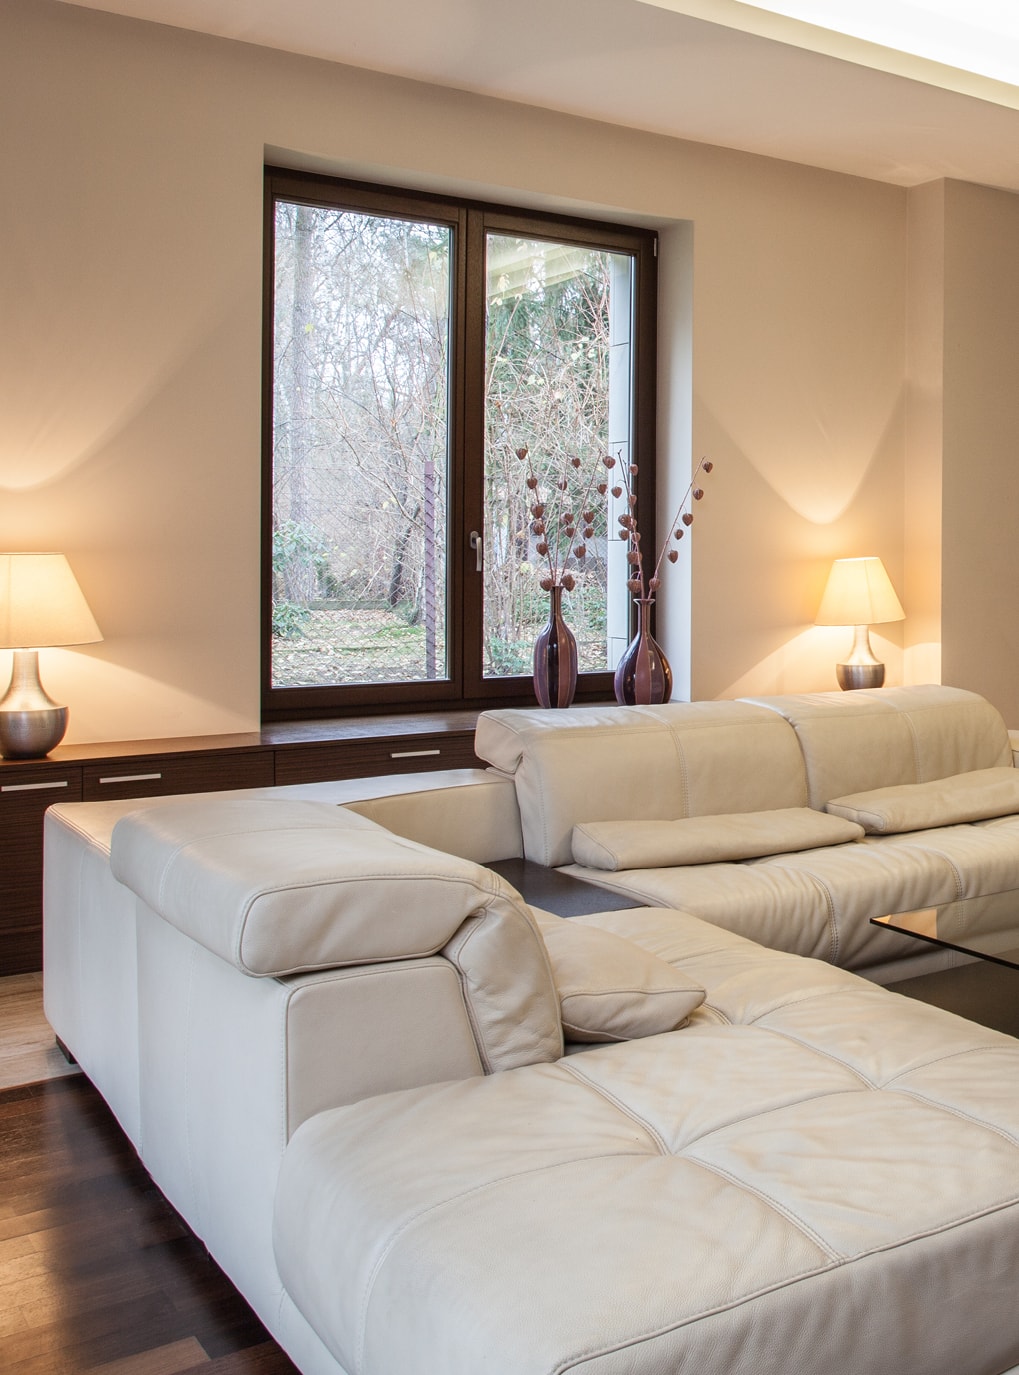 Innovato+ Holz-Alu Fenster von Strussnig in weiß gehaltenem Wohnbereich mit Sofa